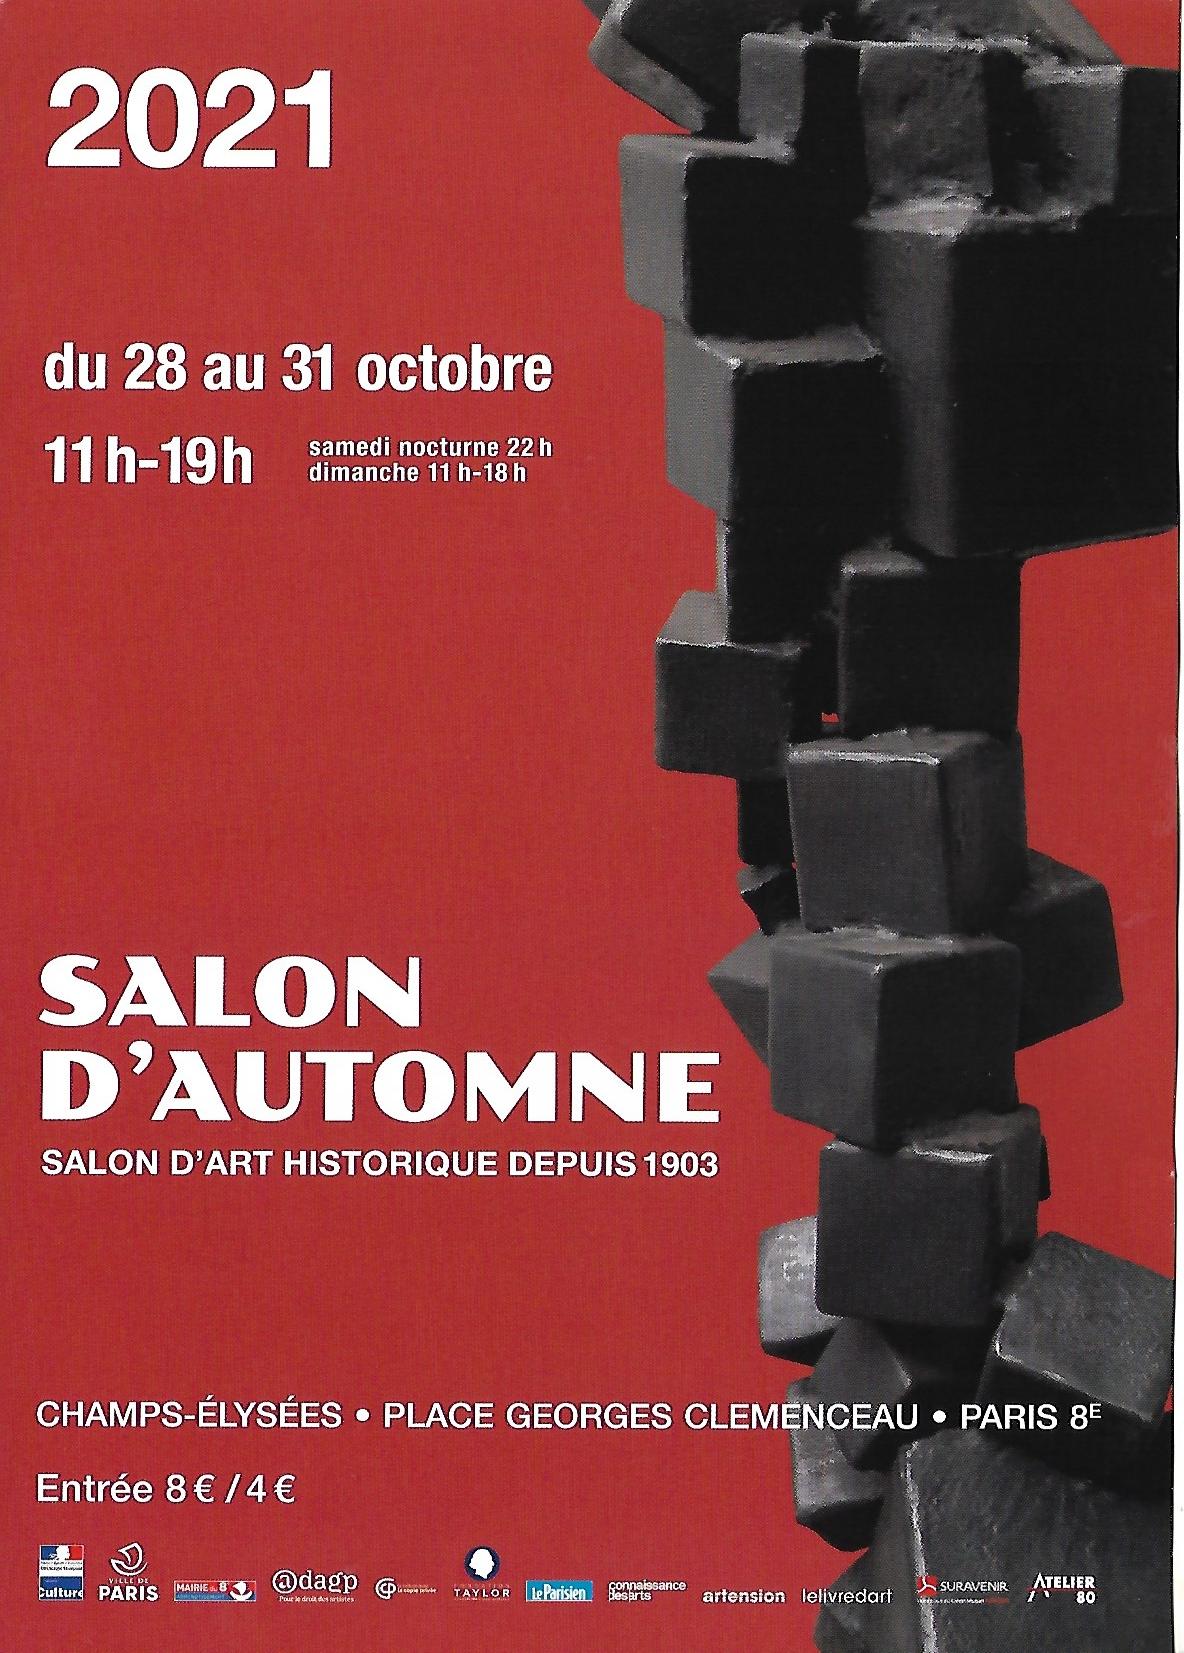 Salon Automne - rue des champs Elysée Paris - Salon d'art historique